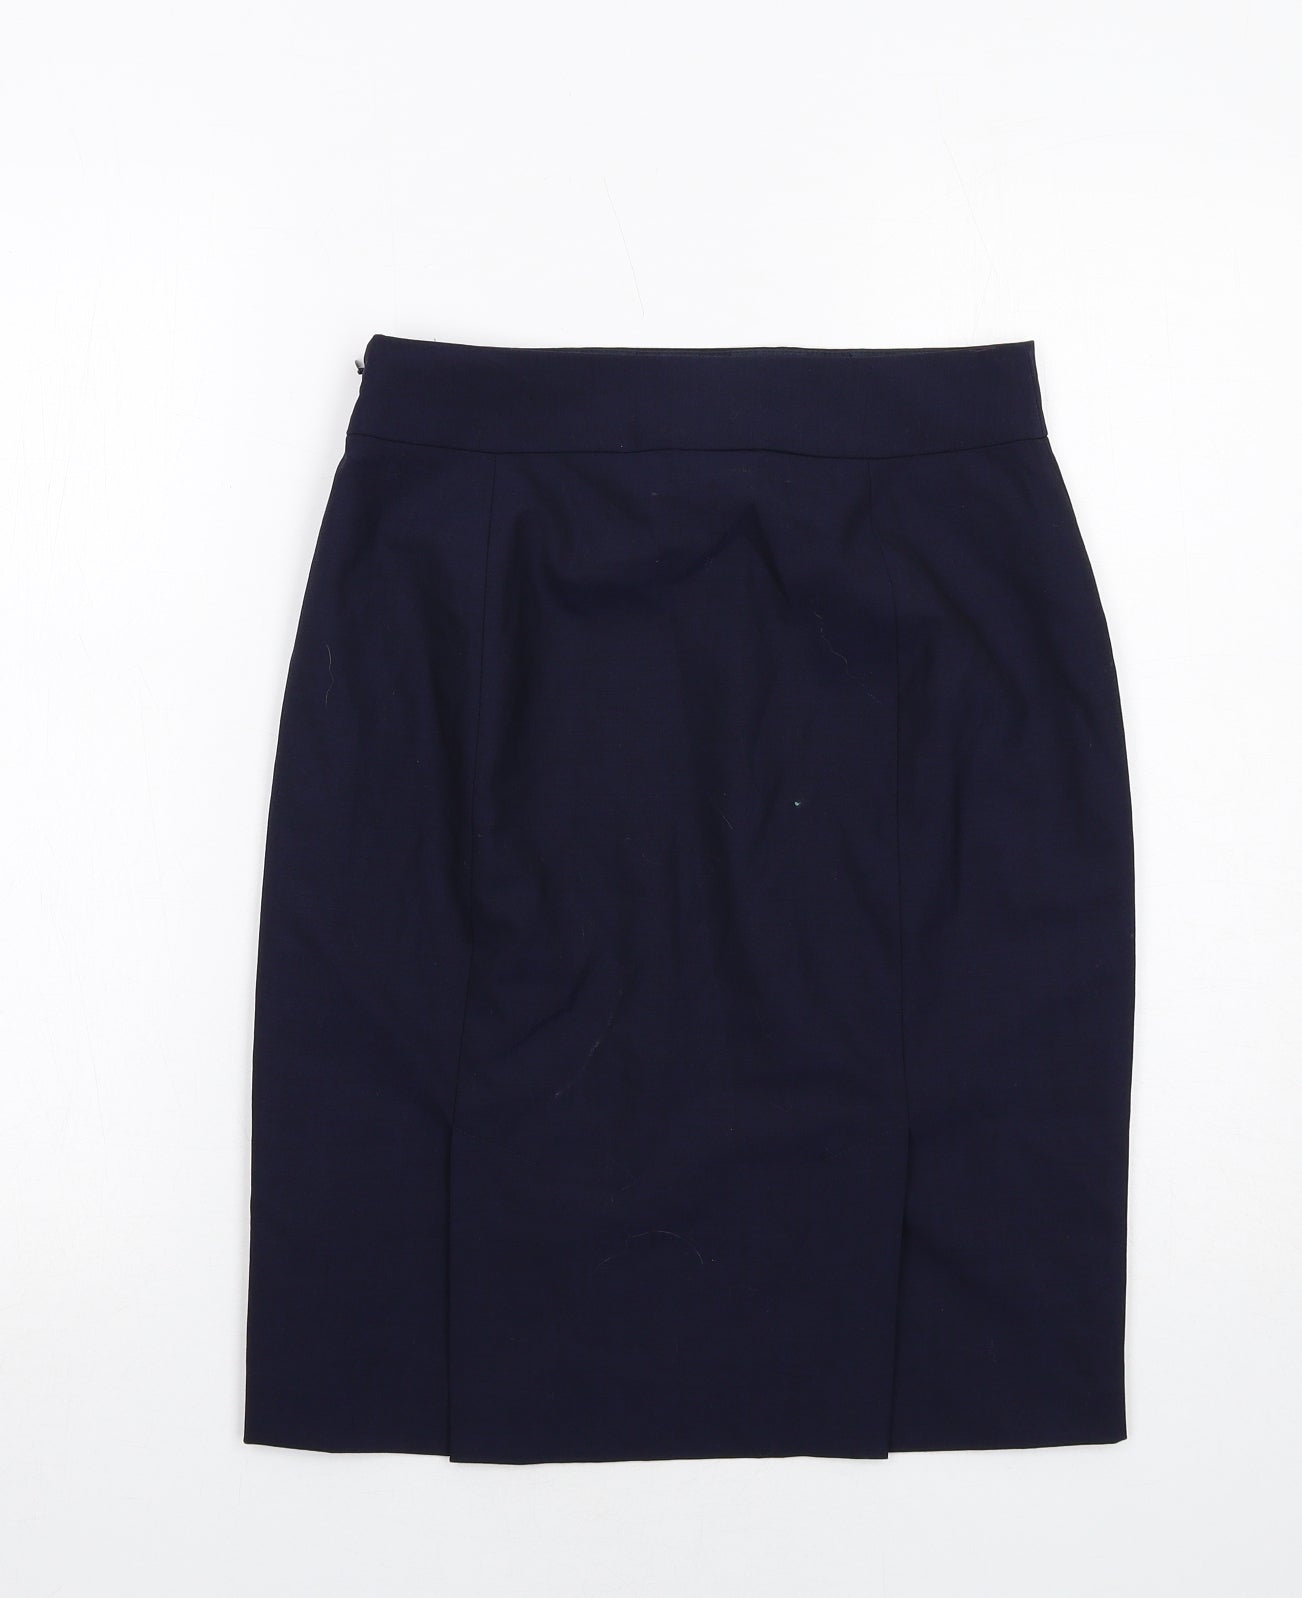 Banana Republic Womens Blue Wool A-Line Skirt Size 6 Zip